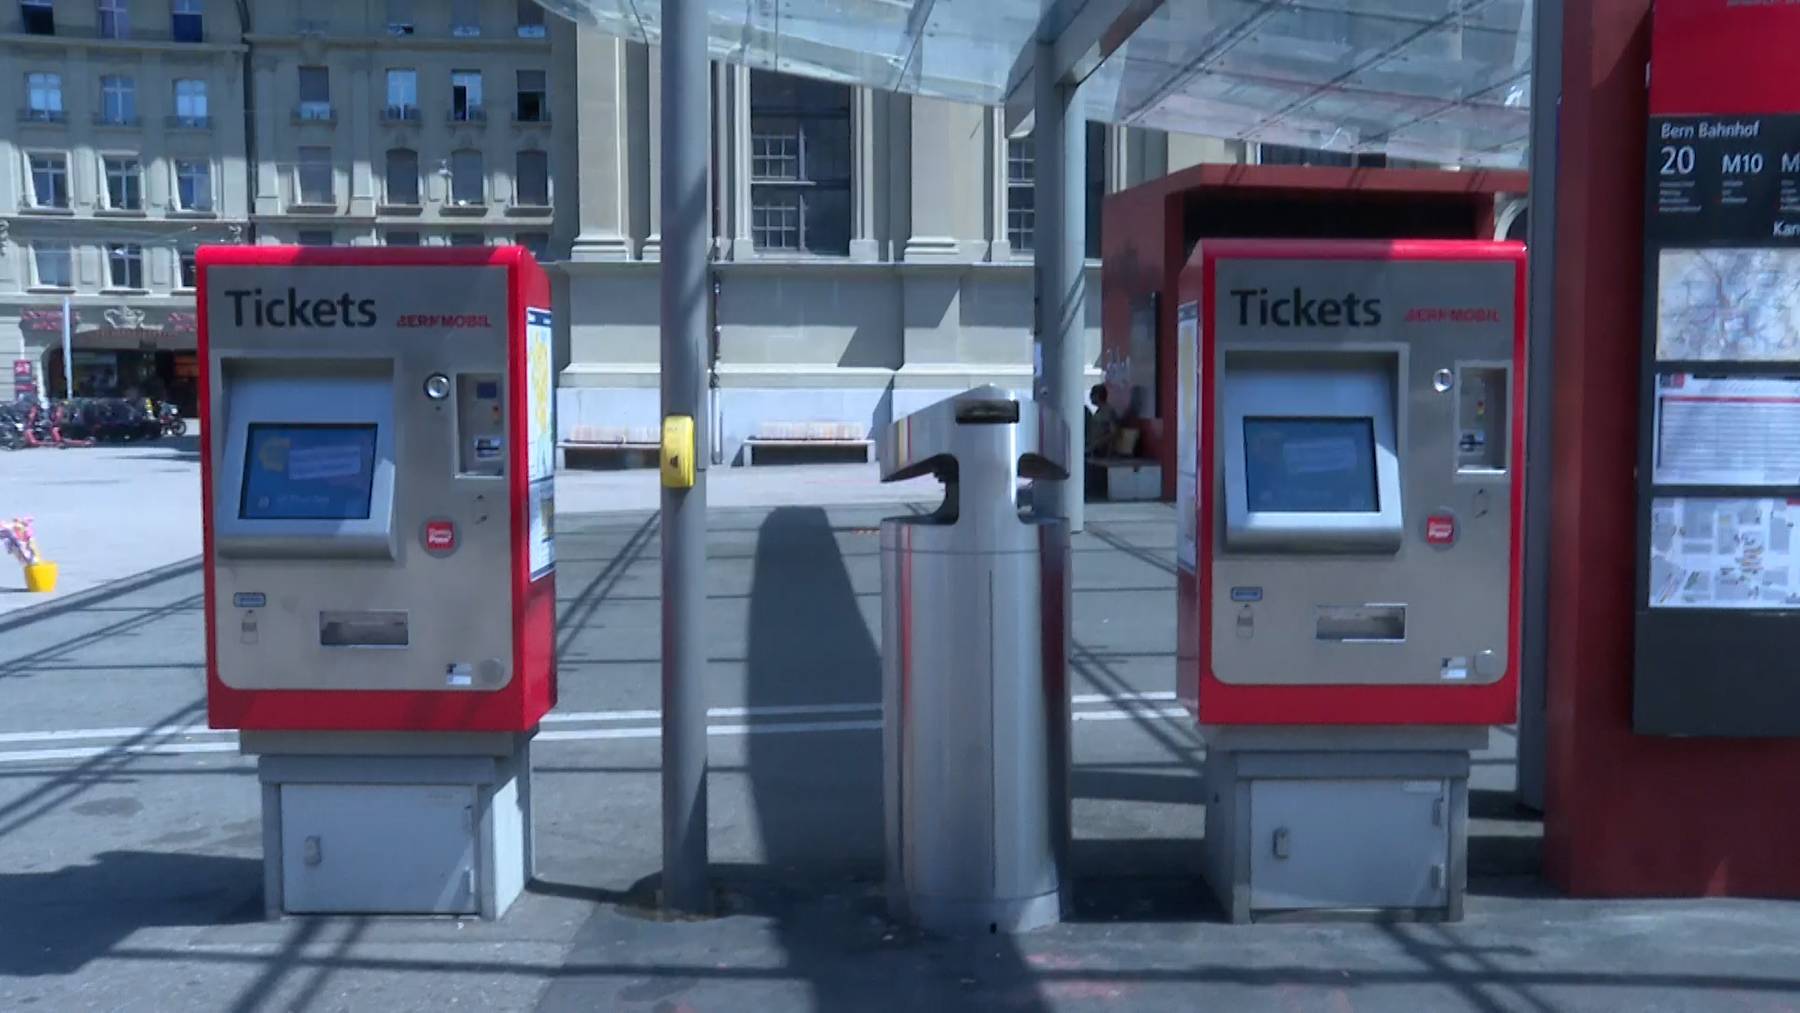 Ticketautomaten von Bernmobil